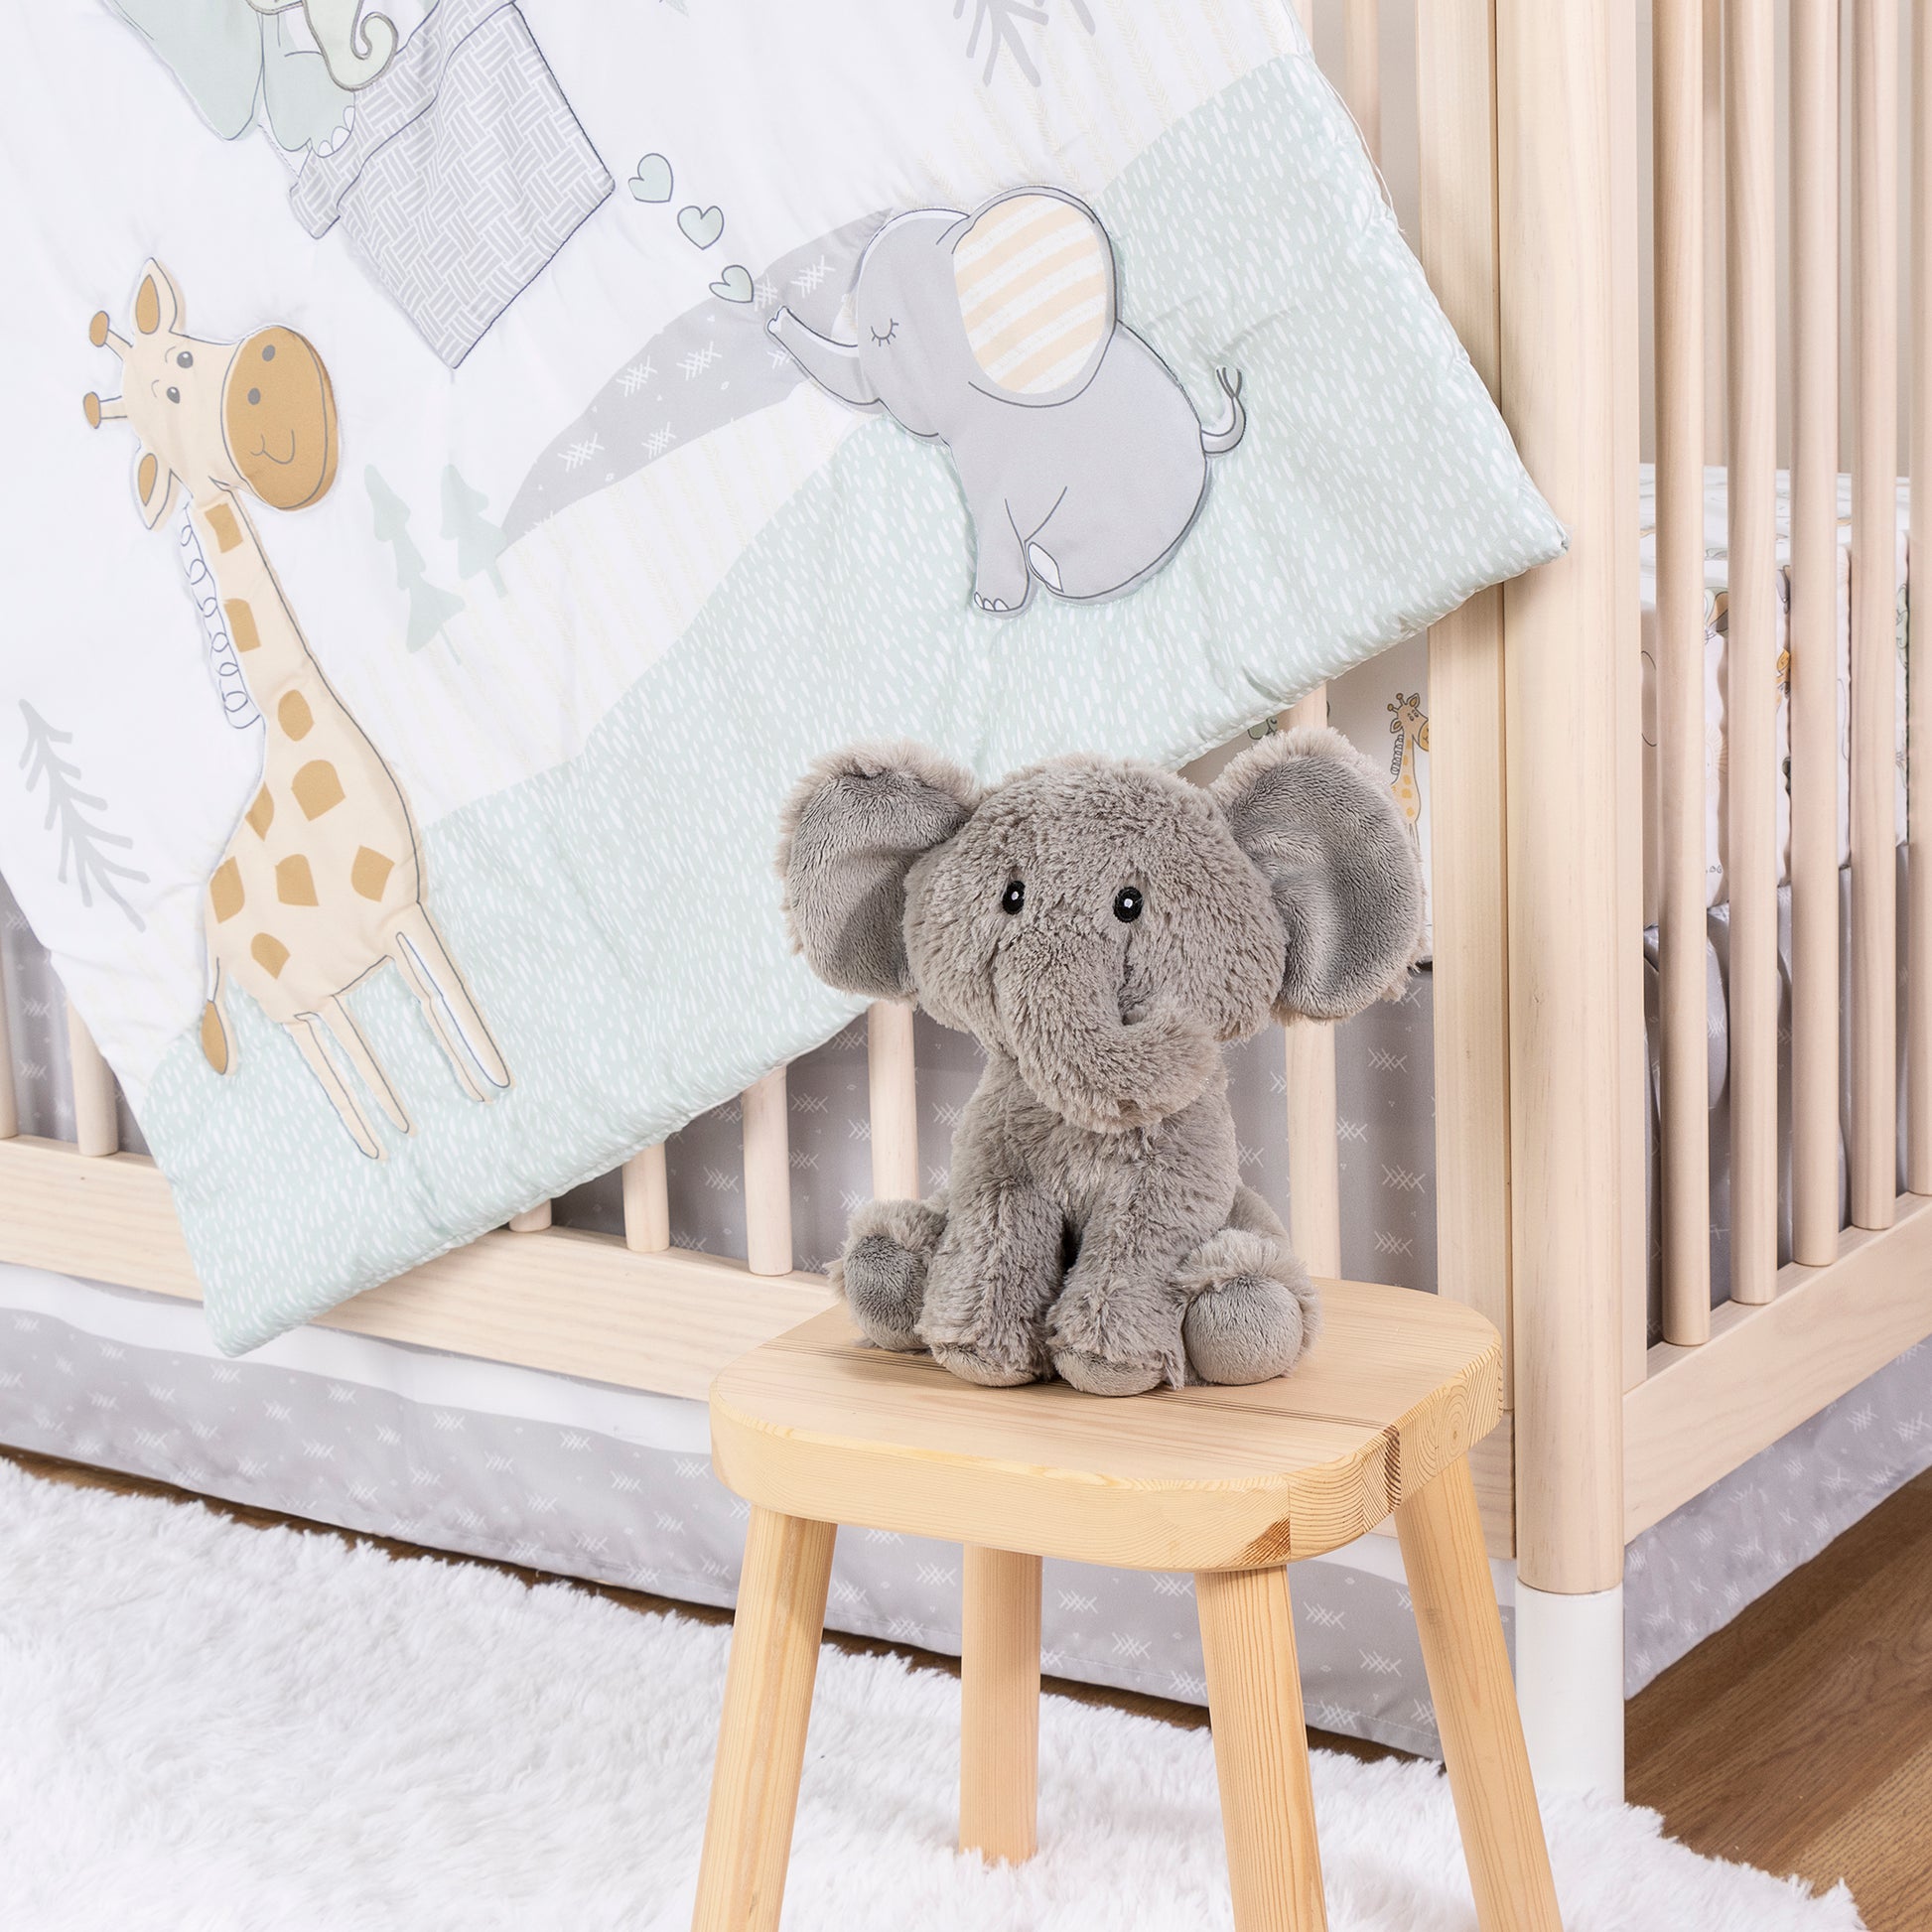 Elephant Plush Toy- stylized nursery image